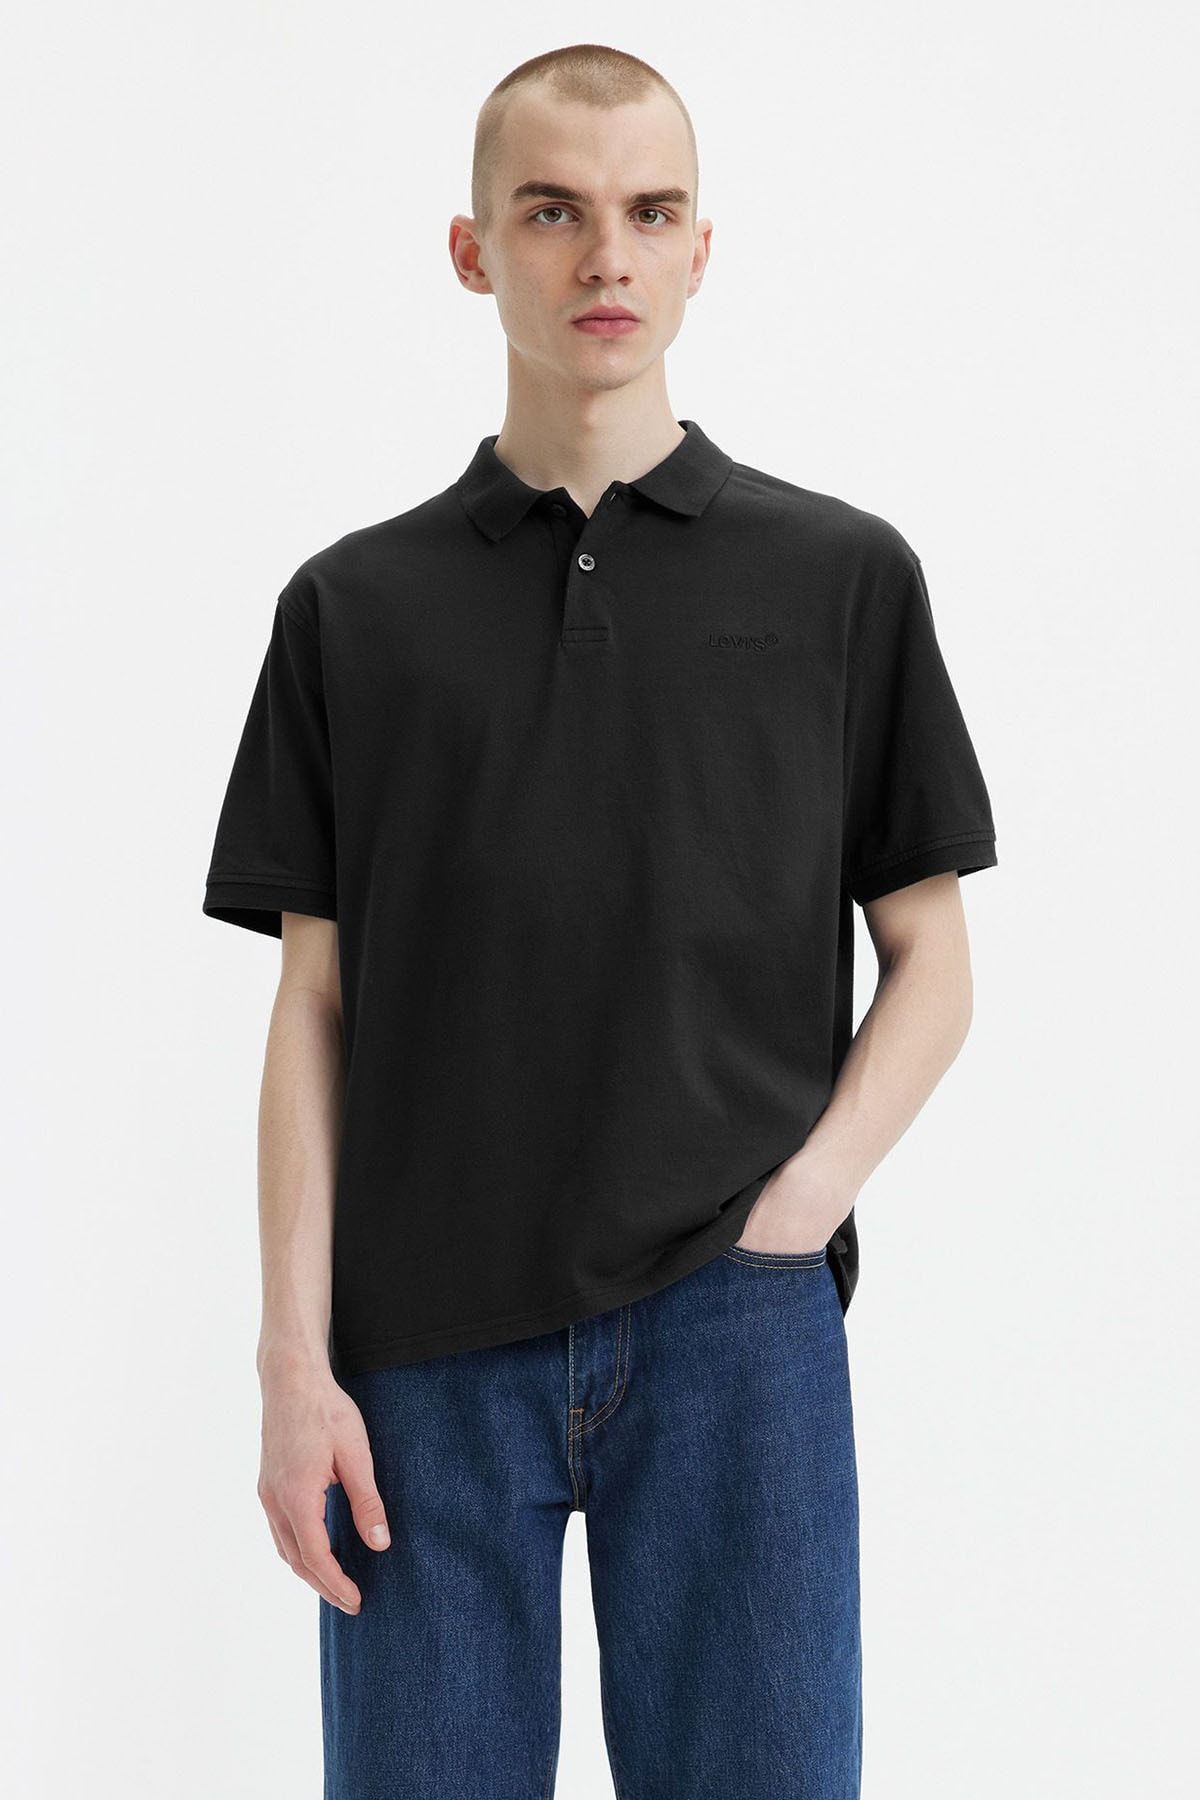 Levi's Erkek Rahat Polo Yaka Siyah T-shirt - A6735-0011